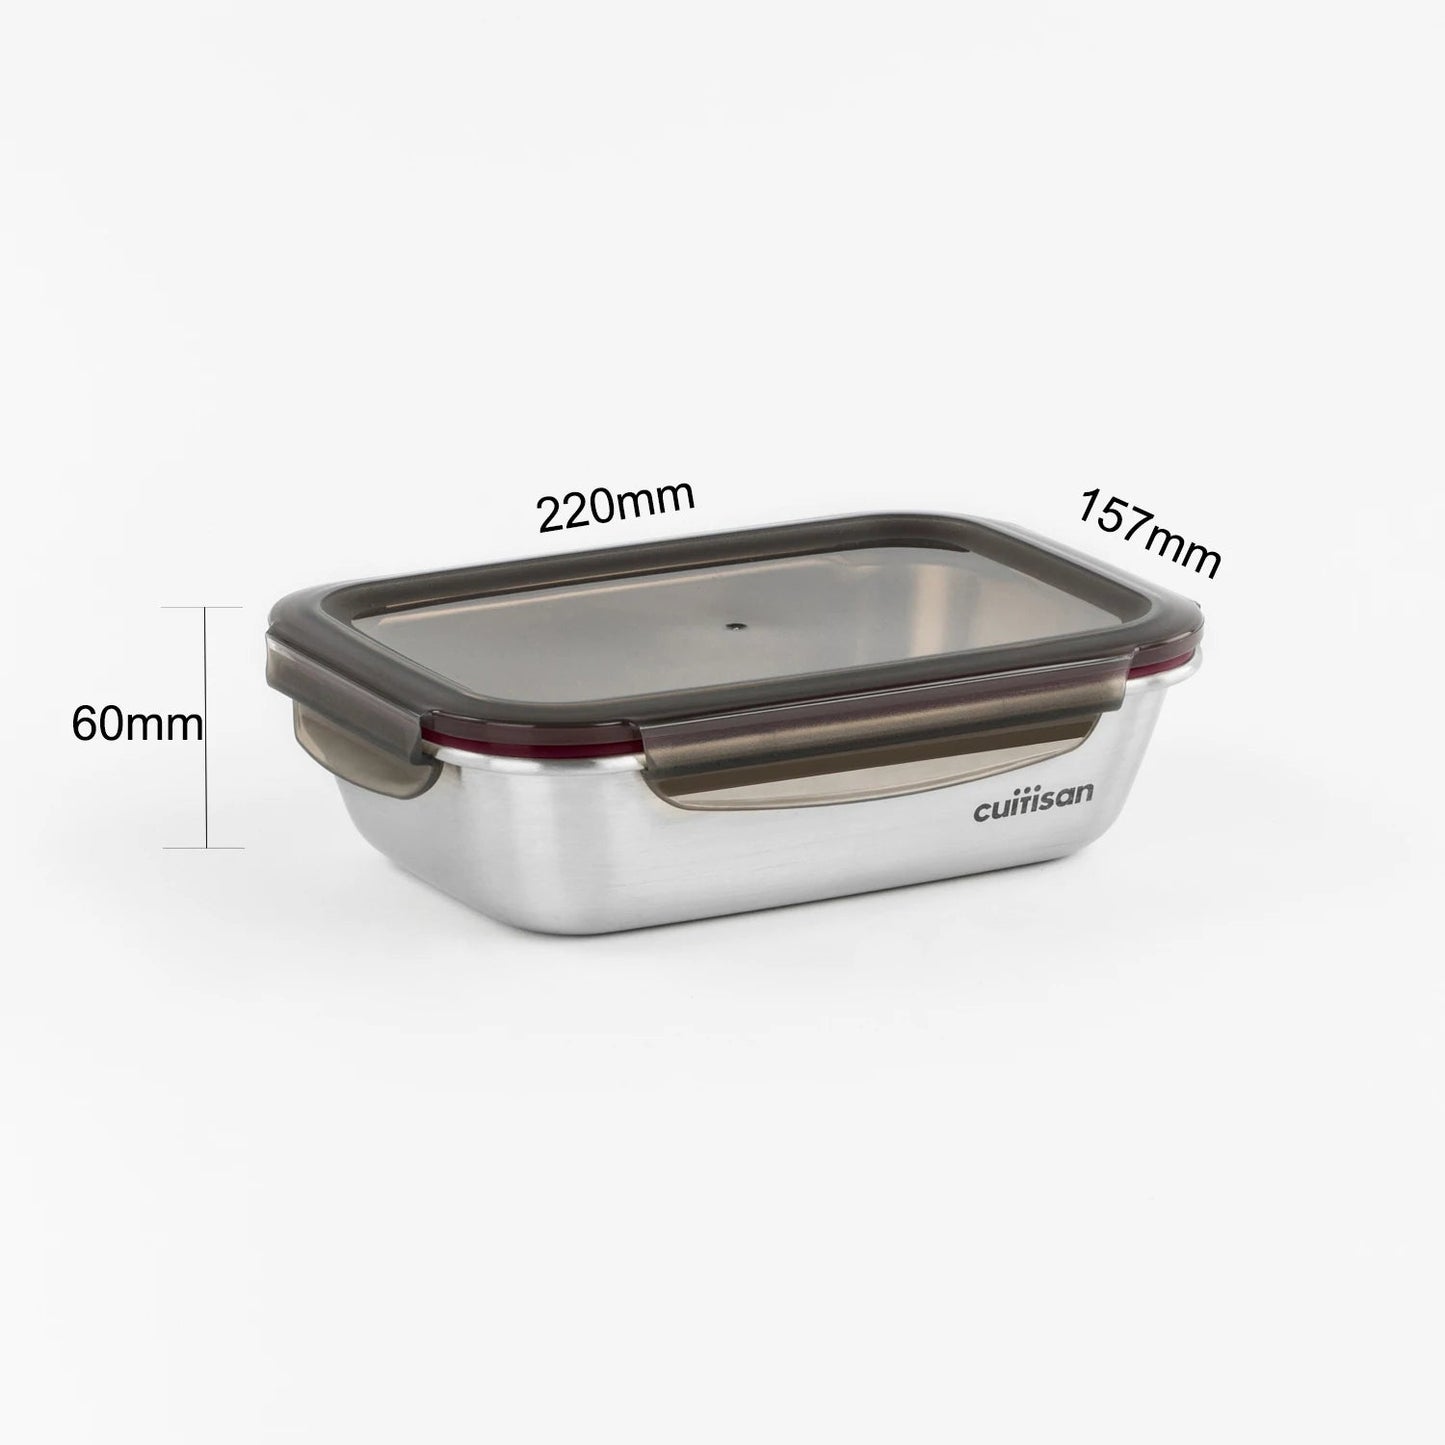 Cuitisan 韓國製 不銹鋼可微波加熱食物盒 - Flora 長方形系列